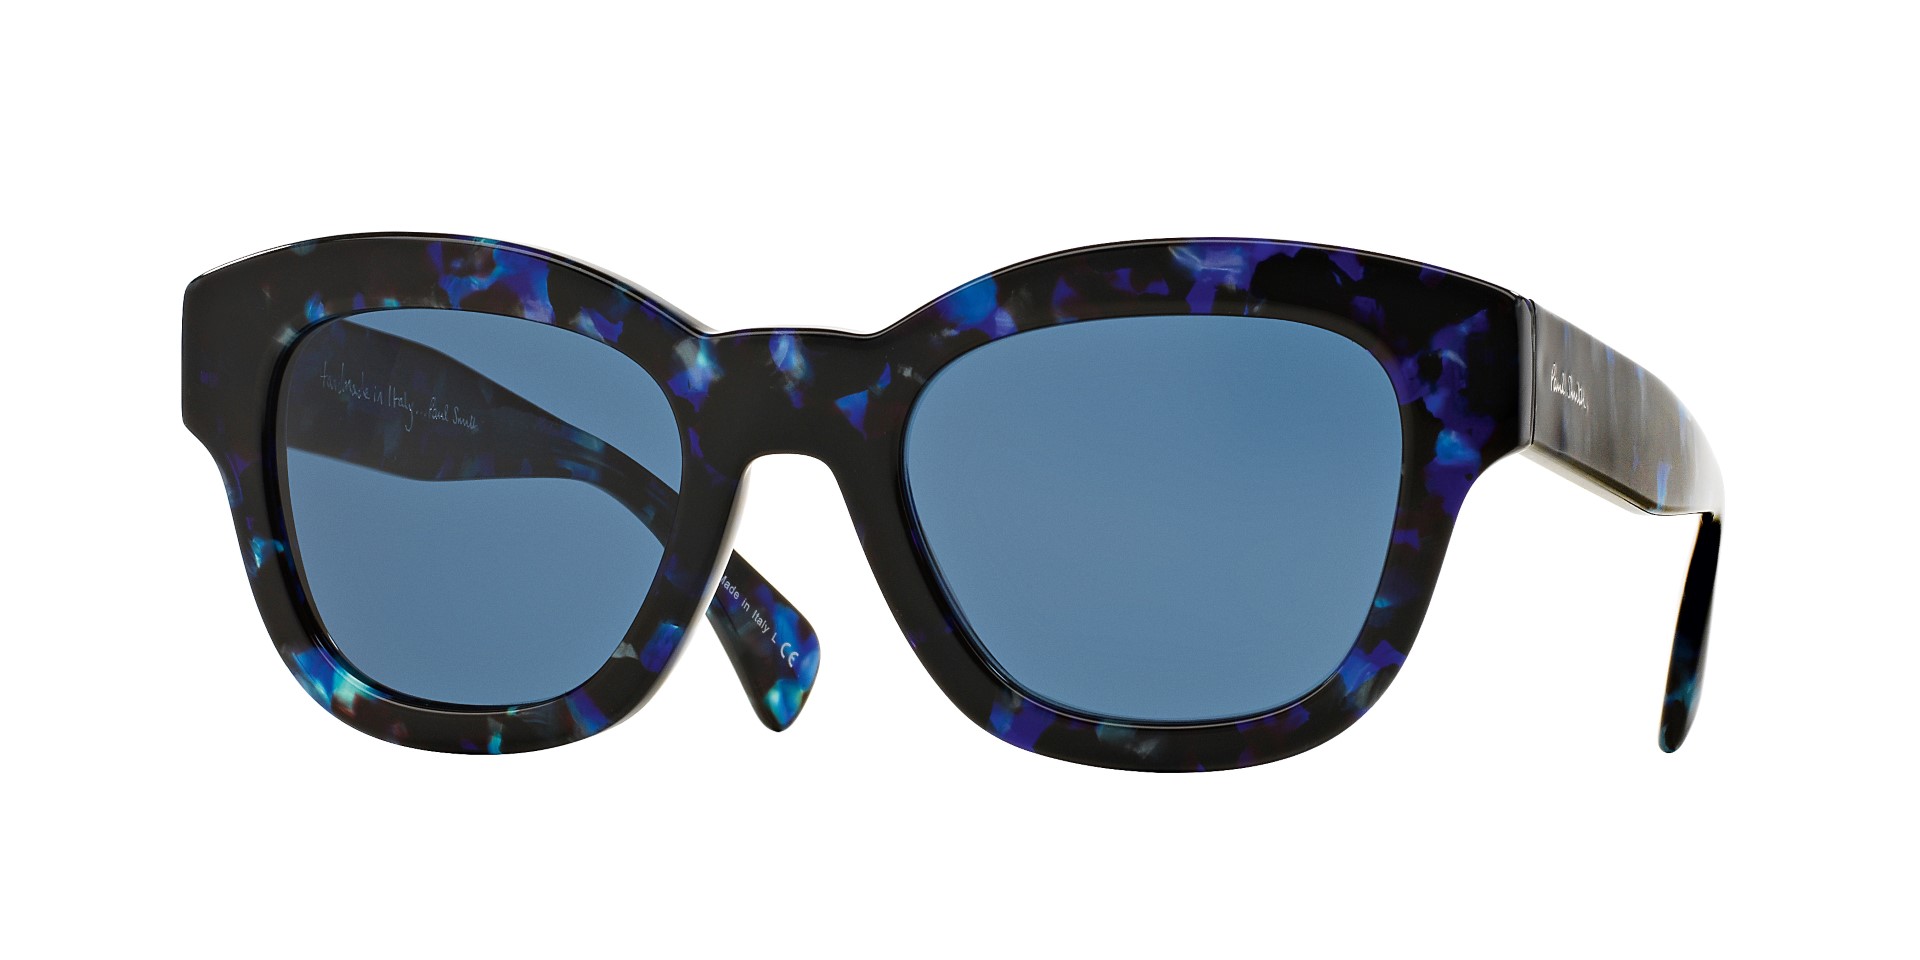 Paul Smith occhiali 2016: la collezione Resort, il Deluxe College Stripe omaggio all’iconico motivo rigato